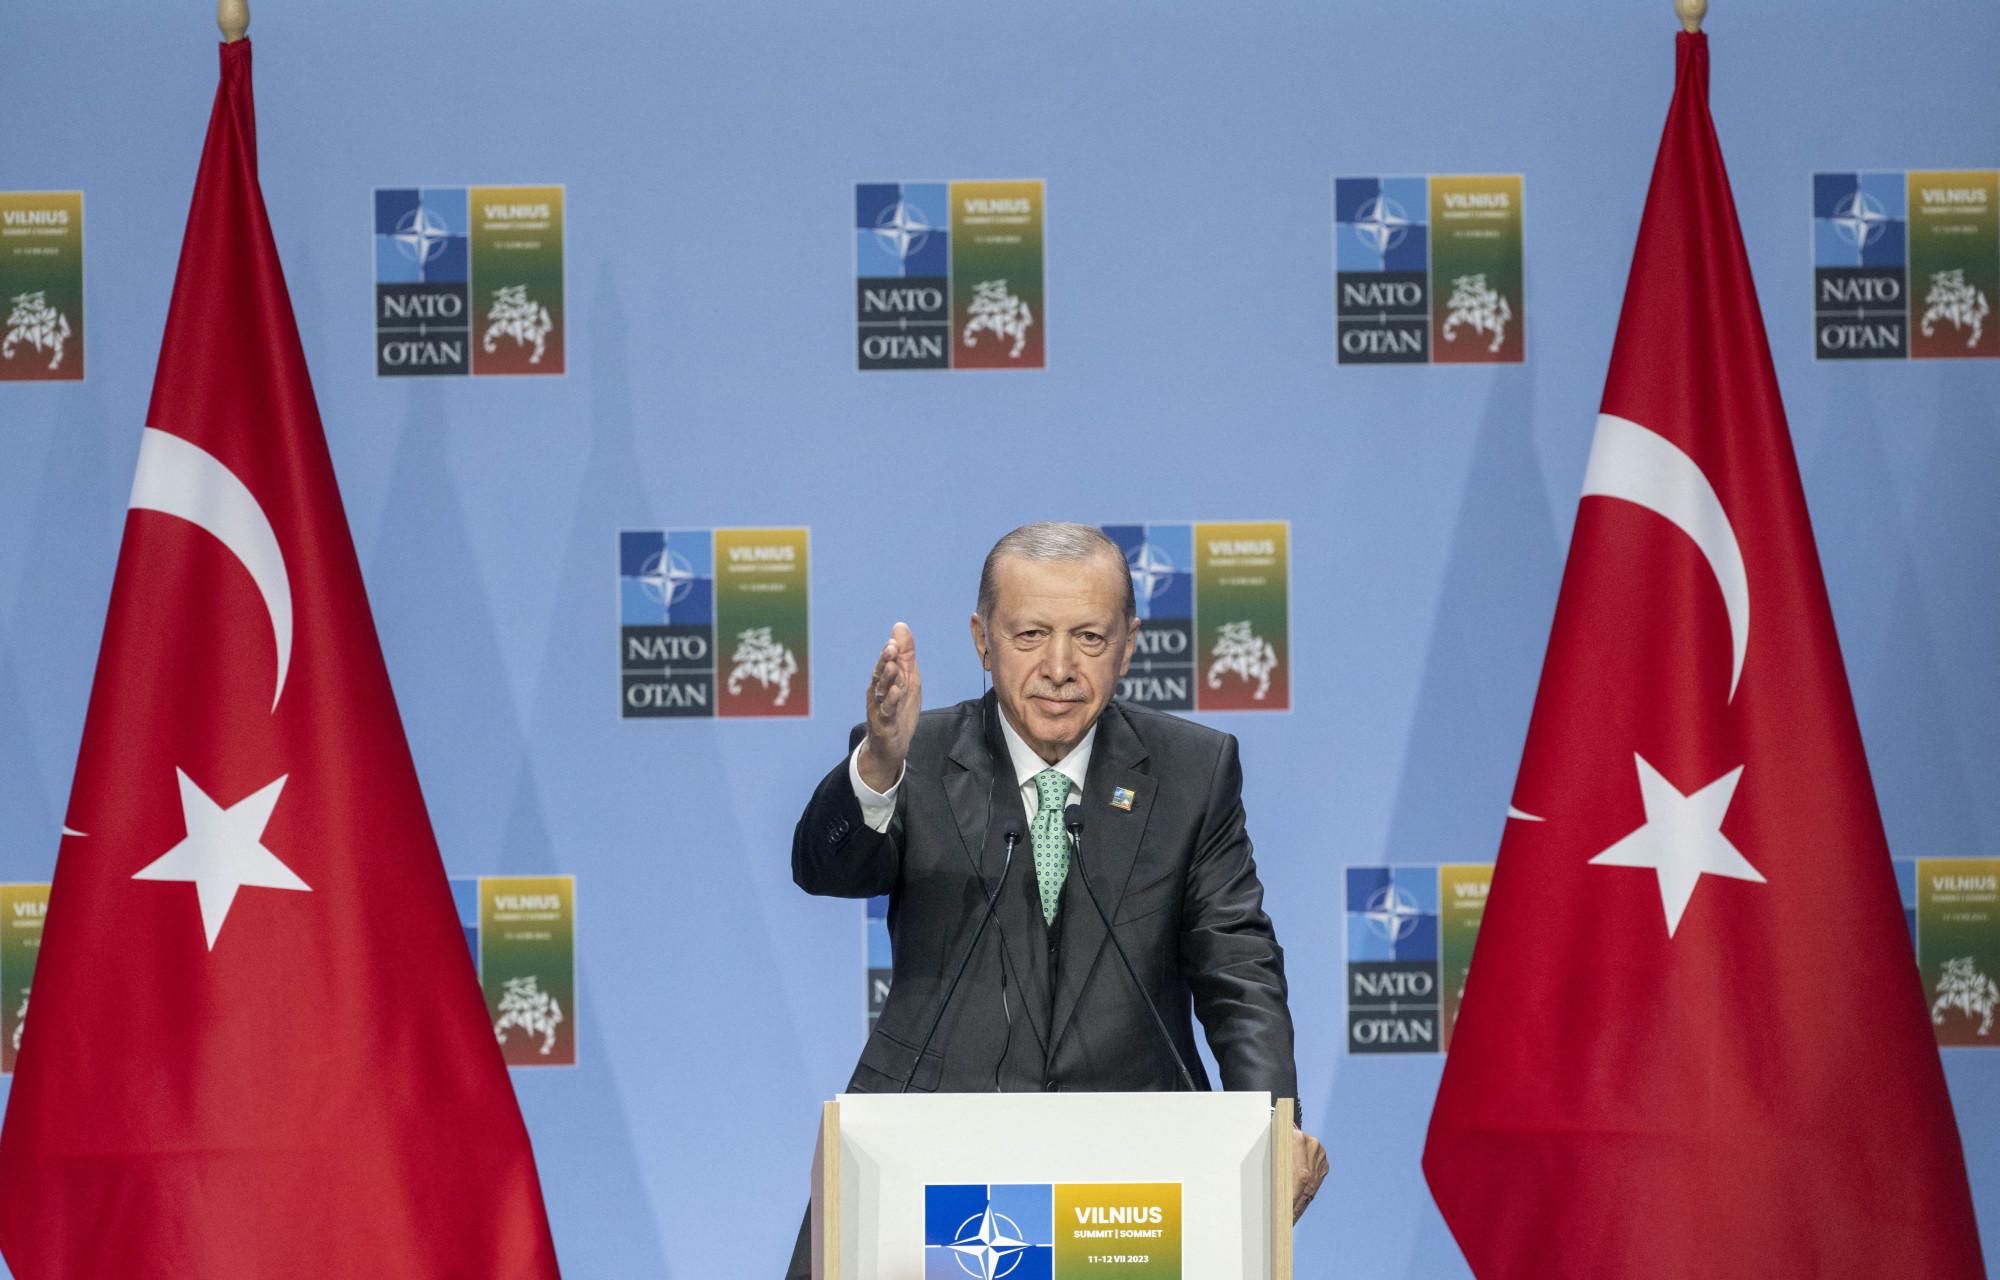 Ősszel kerül a török parlament elé a svéd NATO-csatlakozás ratifikációja